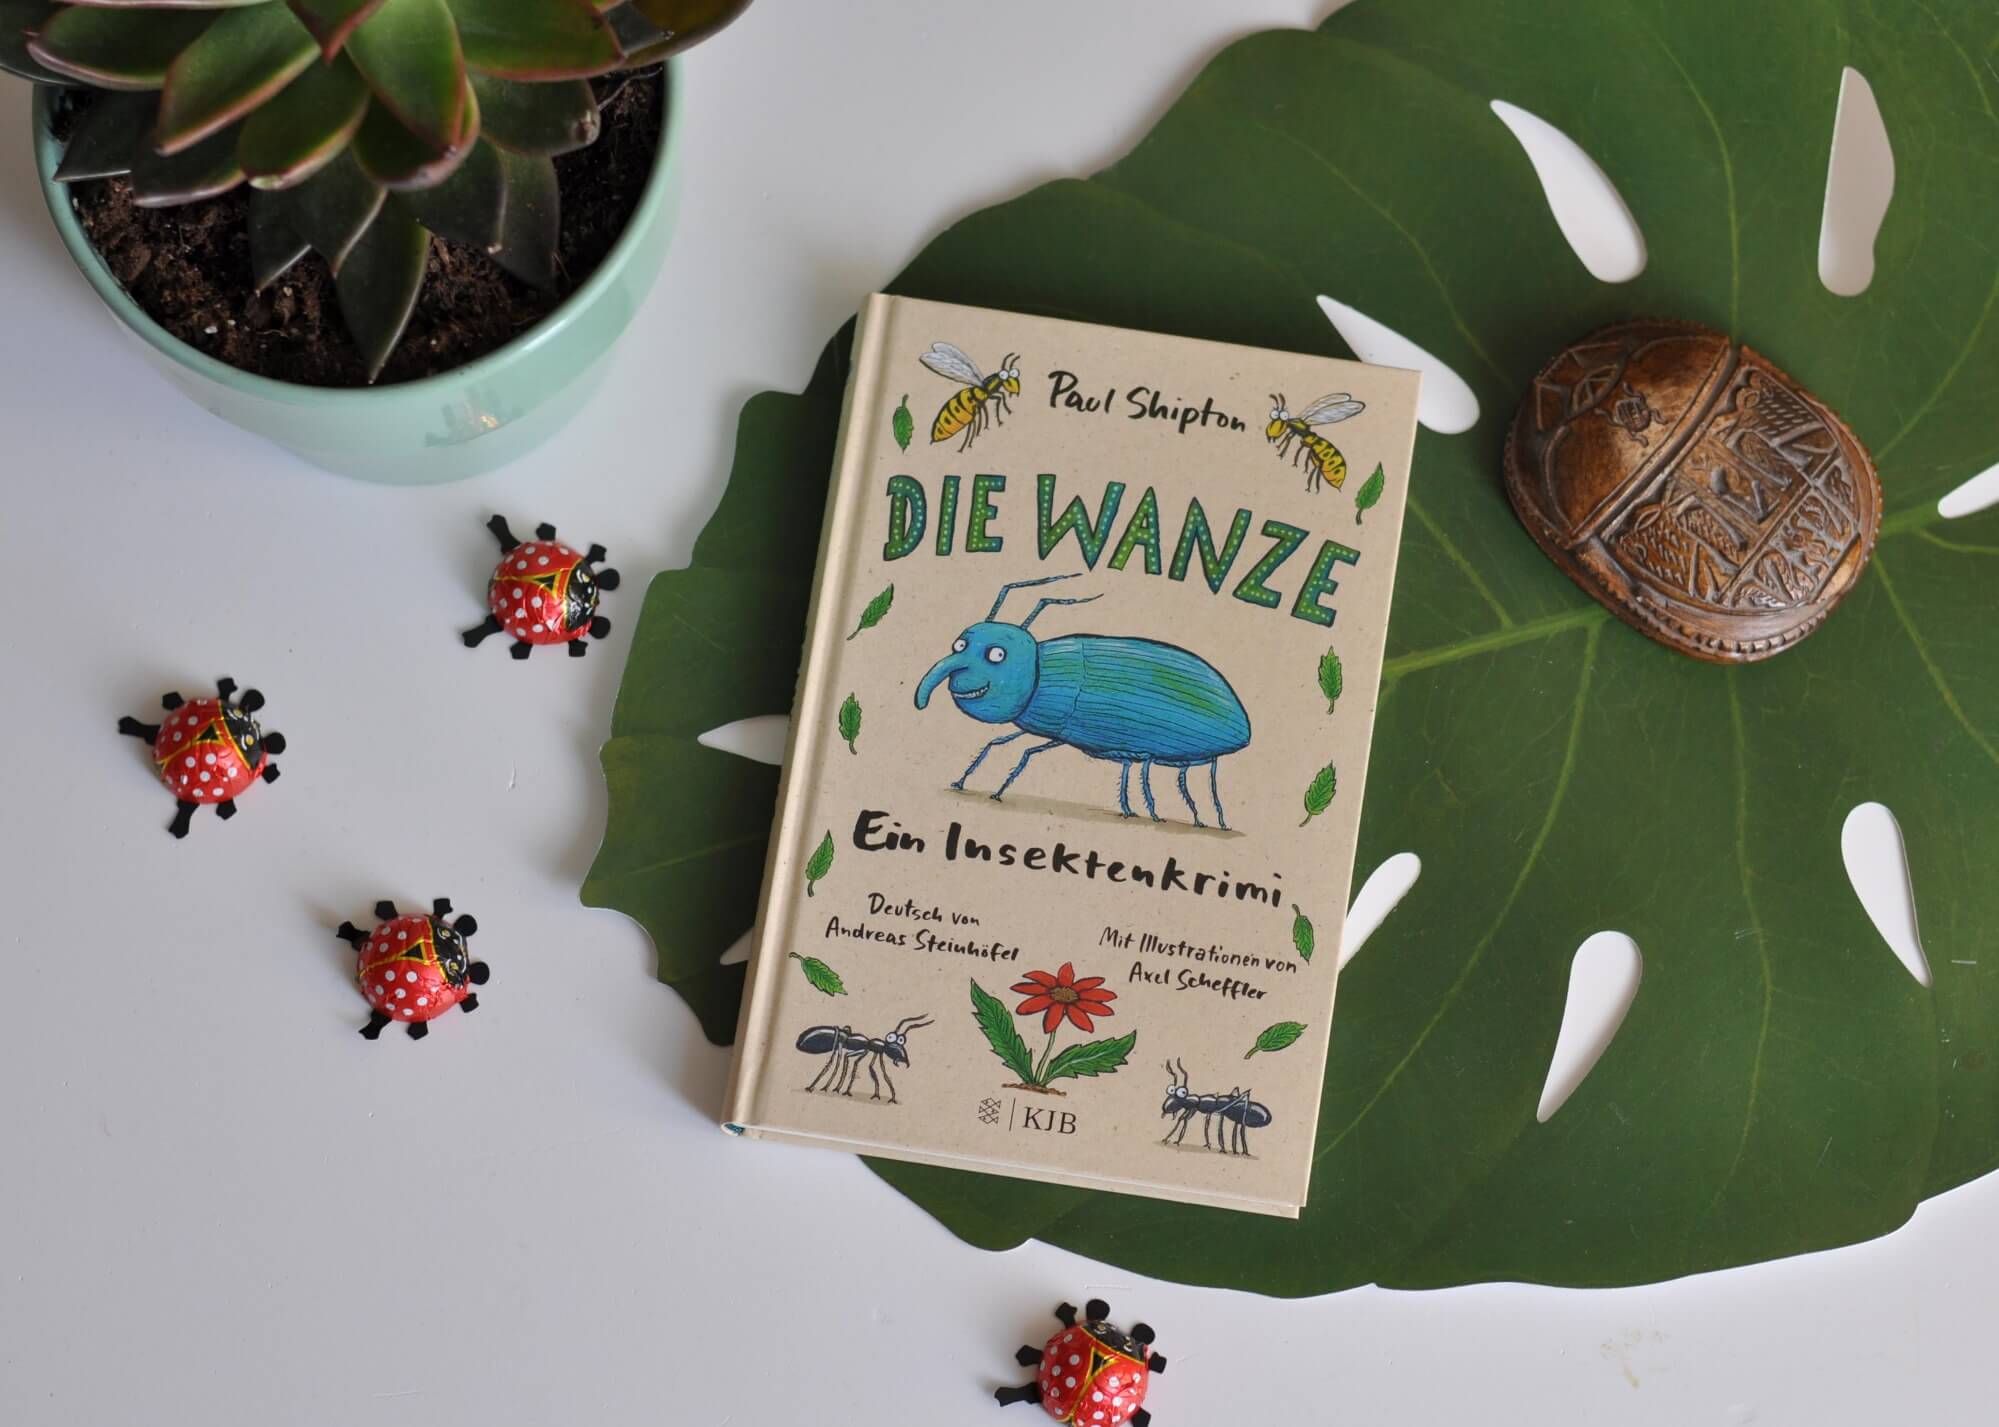 Eddie der Ohrwurm ist spurlos verschwunden. Die Wanze merkt schnell, dass dies mehr als ein Routinefall ist. Denn irgendwie verhalten sich die Ameisen höchst merkwürdig. Und außerdem ist eine unbekannte Grashüpferin aufgetaucht, die selbst sehr viele Fragen stellt. #insekten #ameise #käfer #detektiv #garten #krimi #kinderbuch #lesen